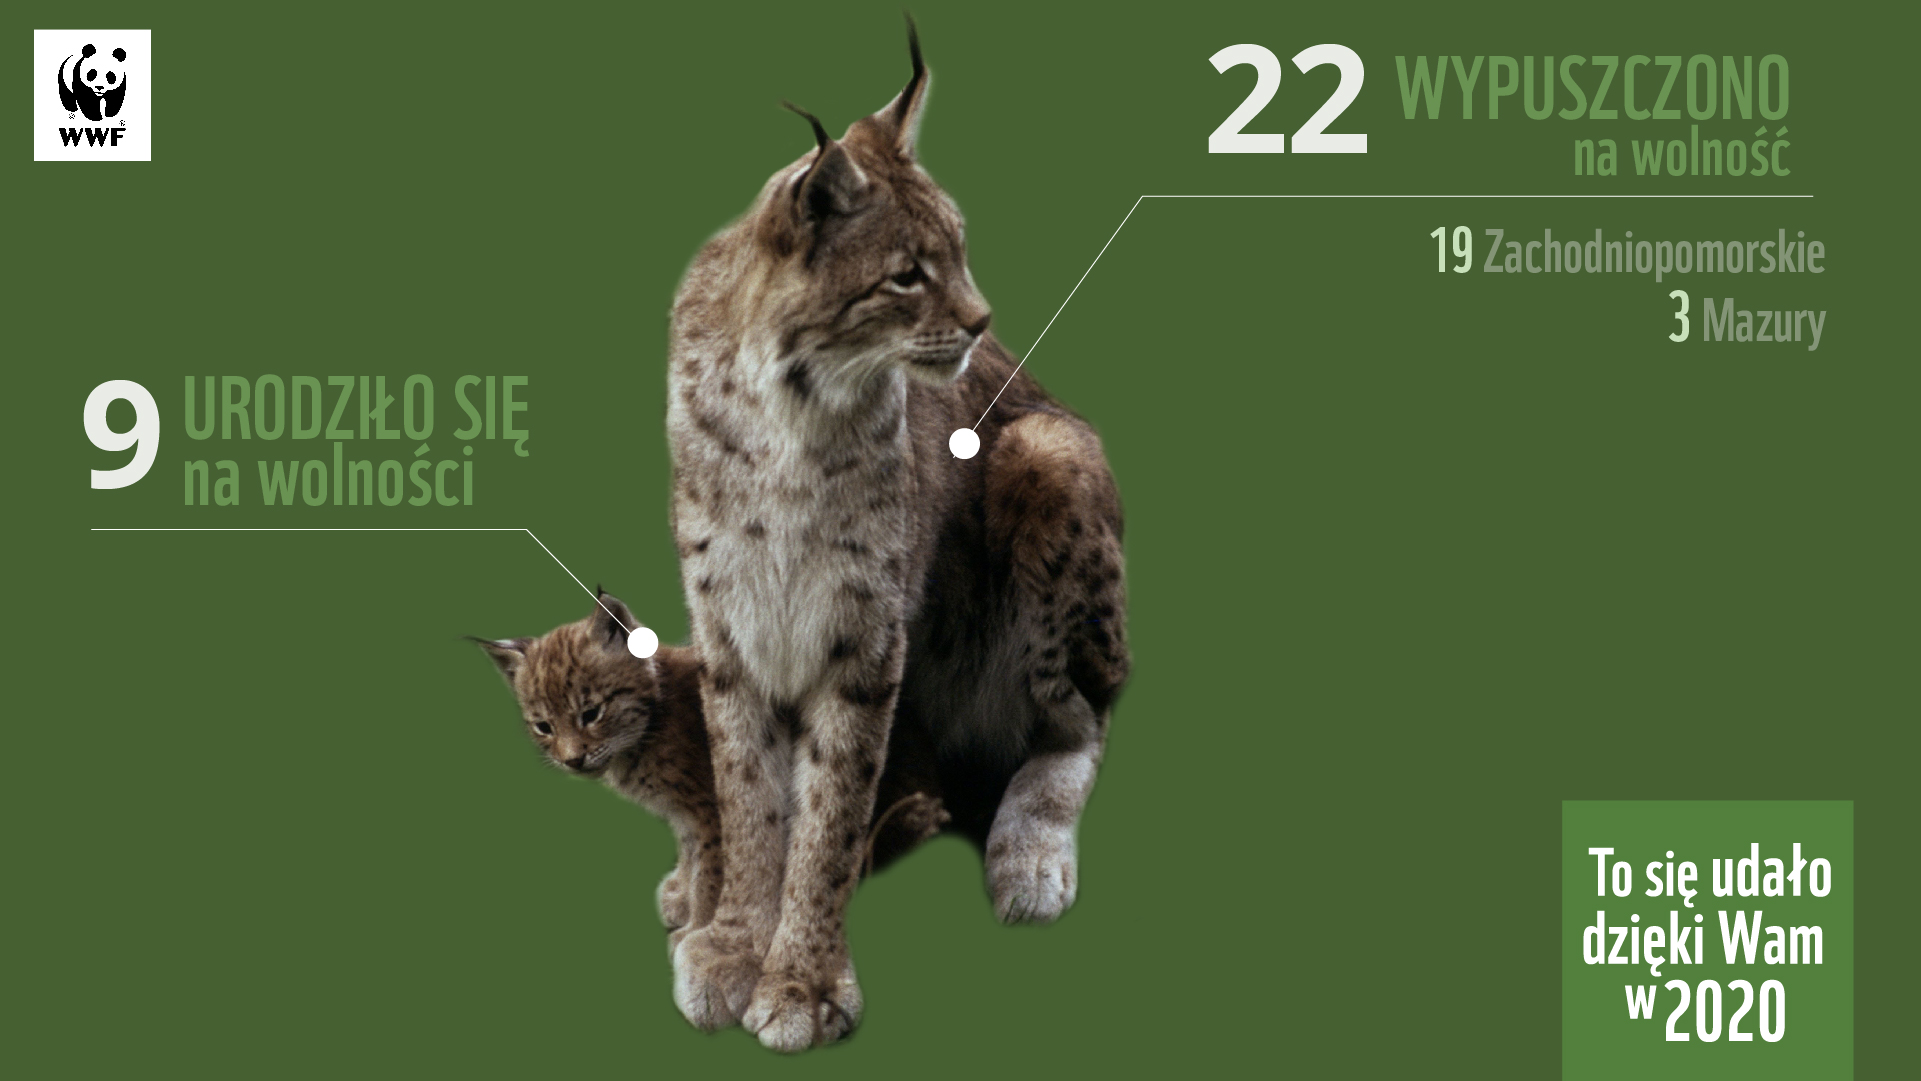 W 2020 roku dzięki darczyńcom WWF na wolność wypuszczono 22 rysie, a 9 urodziło się na wolności